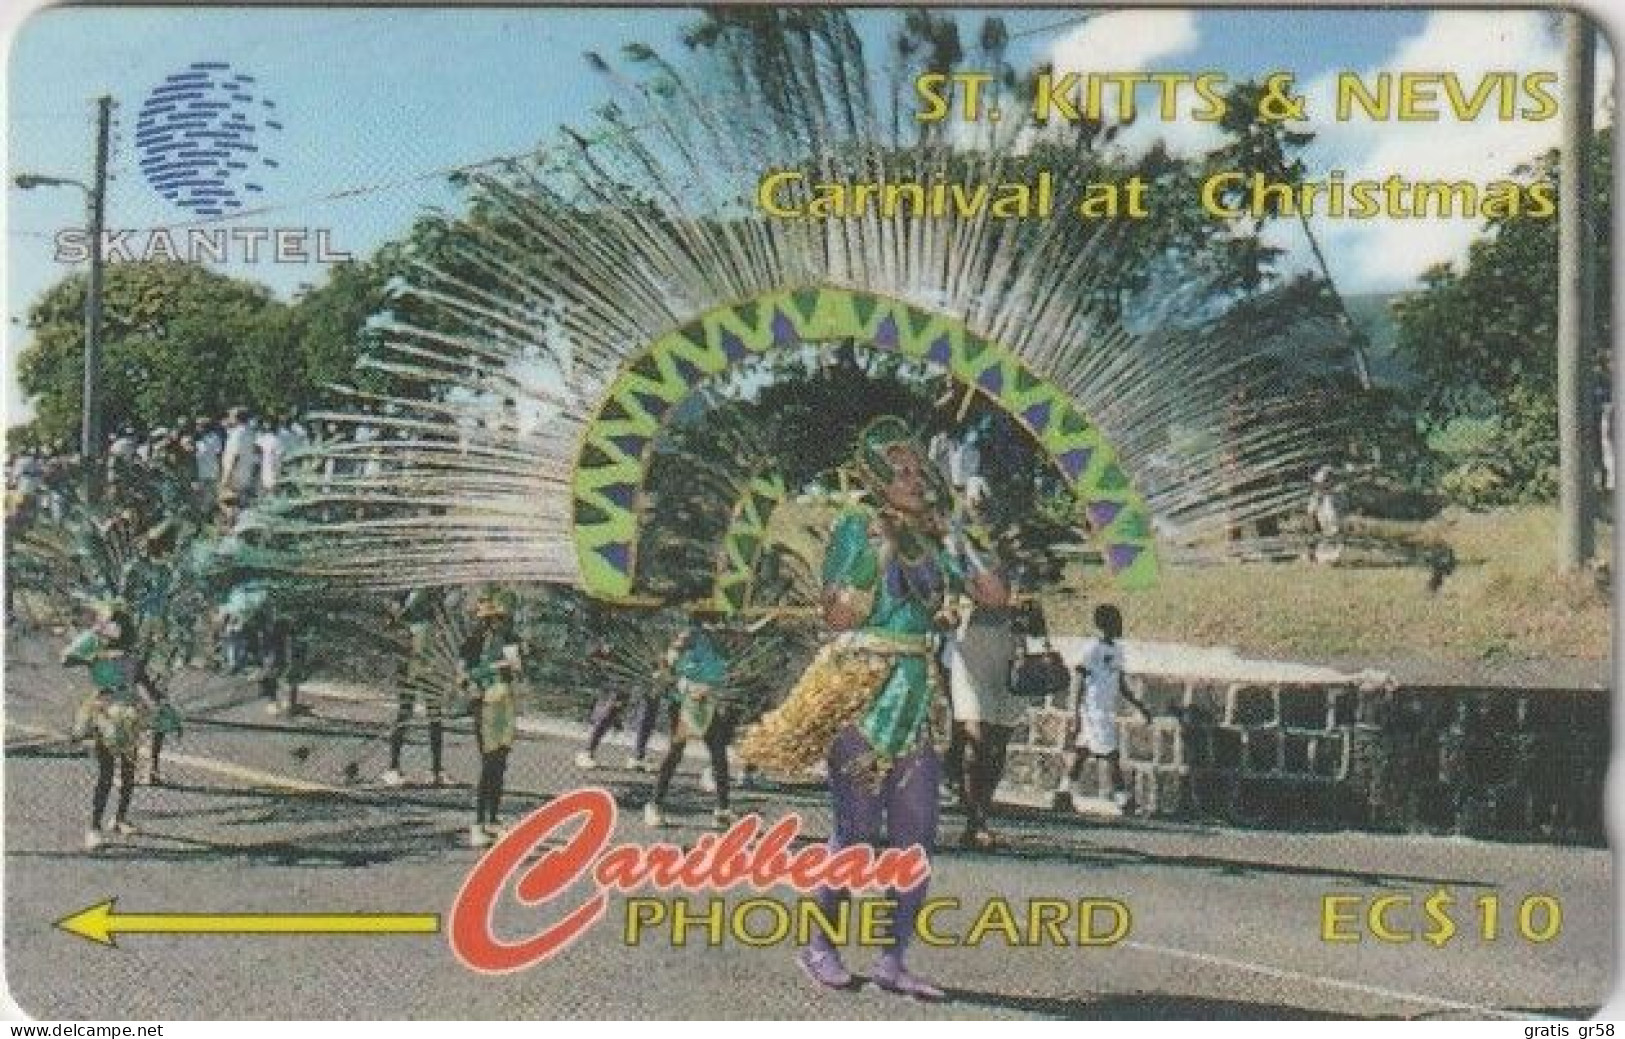 St. Kitts & Nevis - STK-16A, GPT, 16CSKA, Carnival At Christmas 2, 10 EC$, 400ex, 1995, Used - St. Kitts En Nevis